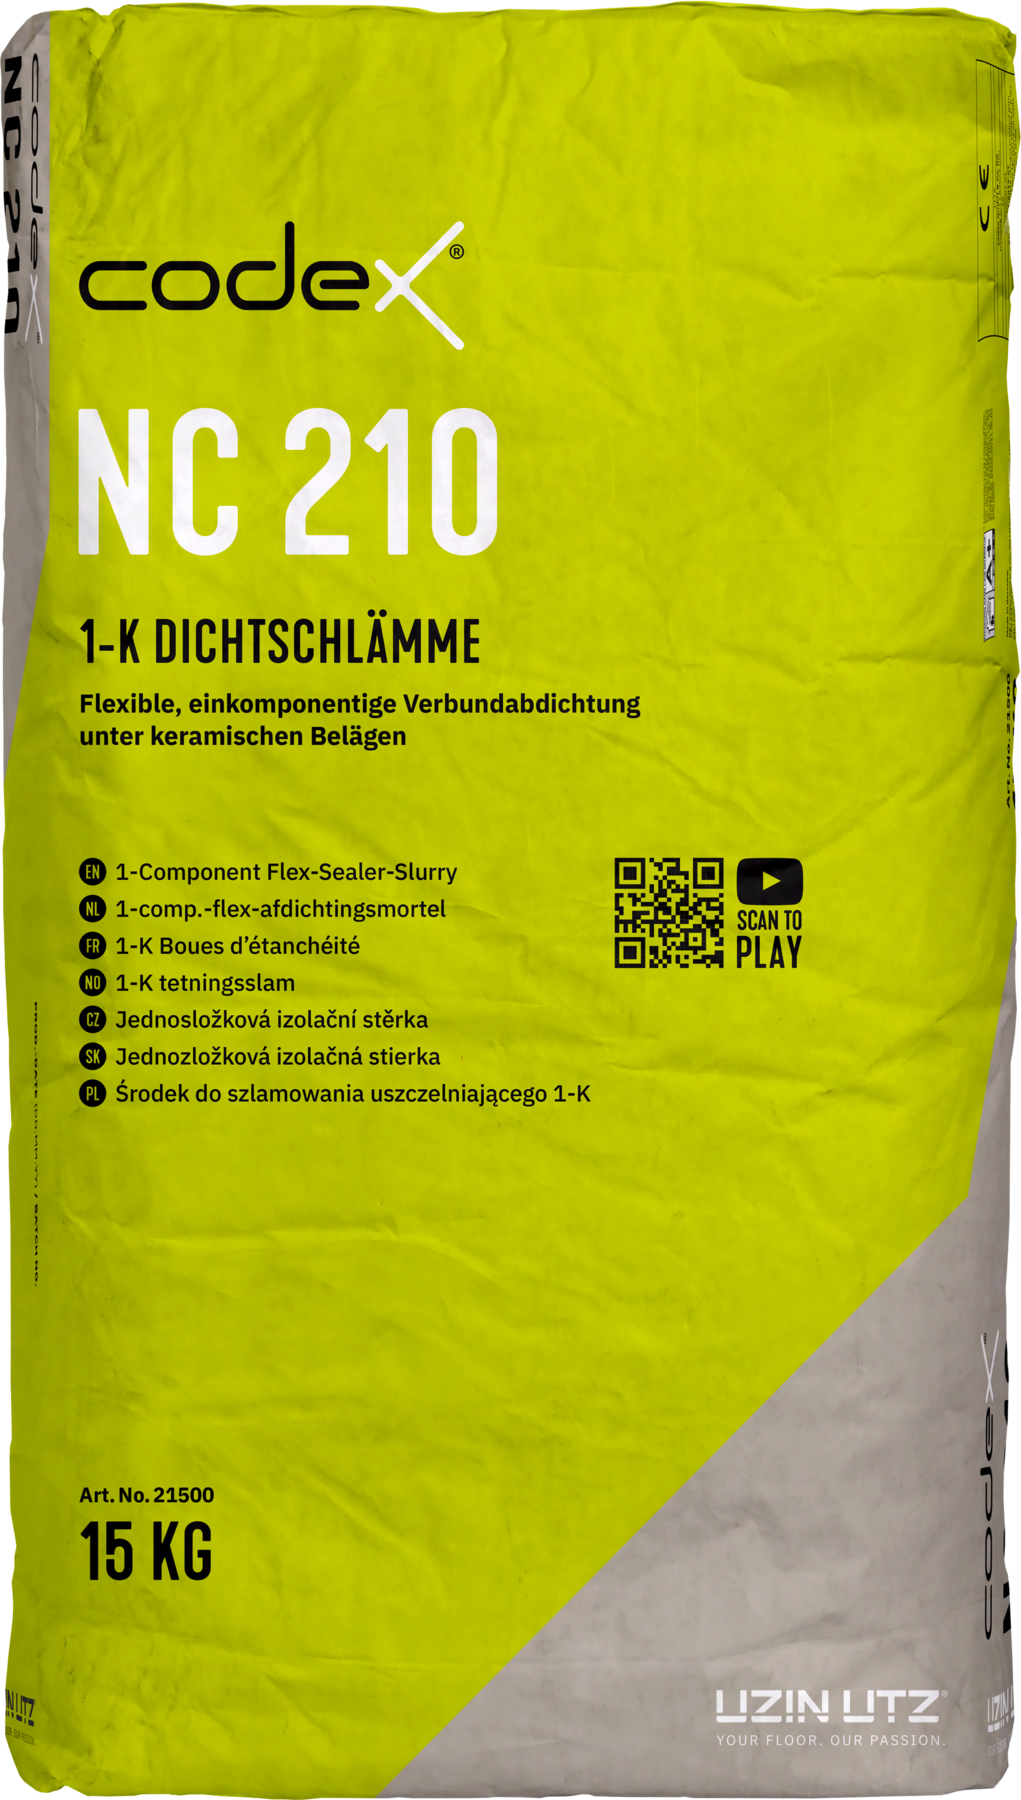 Codex NC 210 15 kg 1K Dichtschlämme